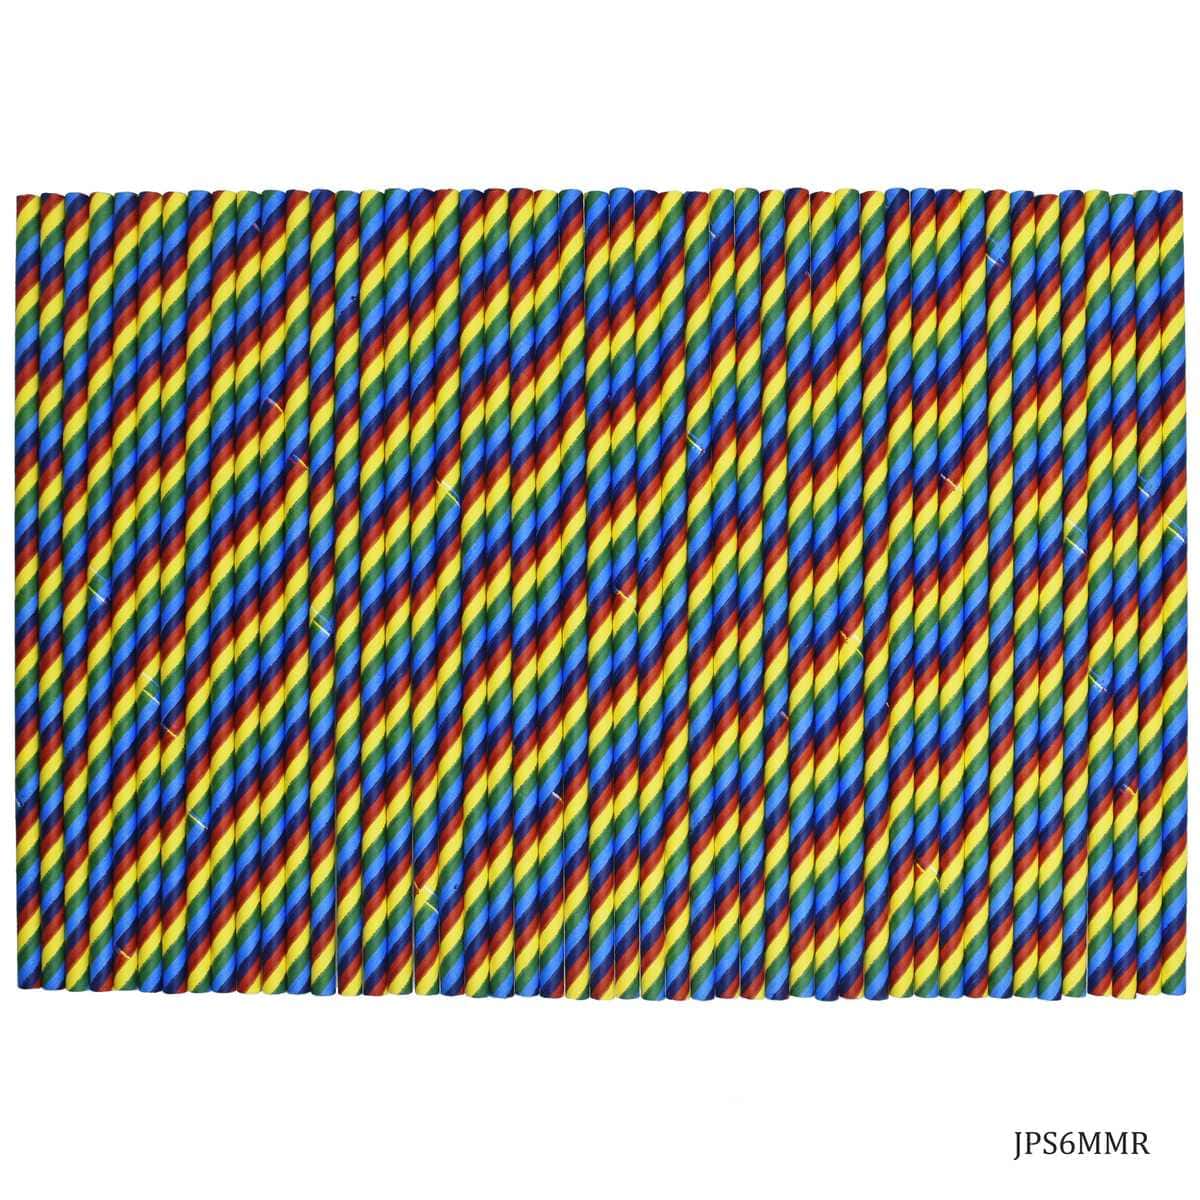 jags-mumbai Emboss material Jags Decorative Pipe 50Pcs Paper Straw Rainbow